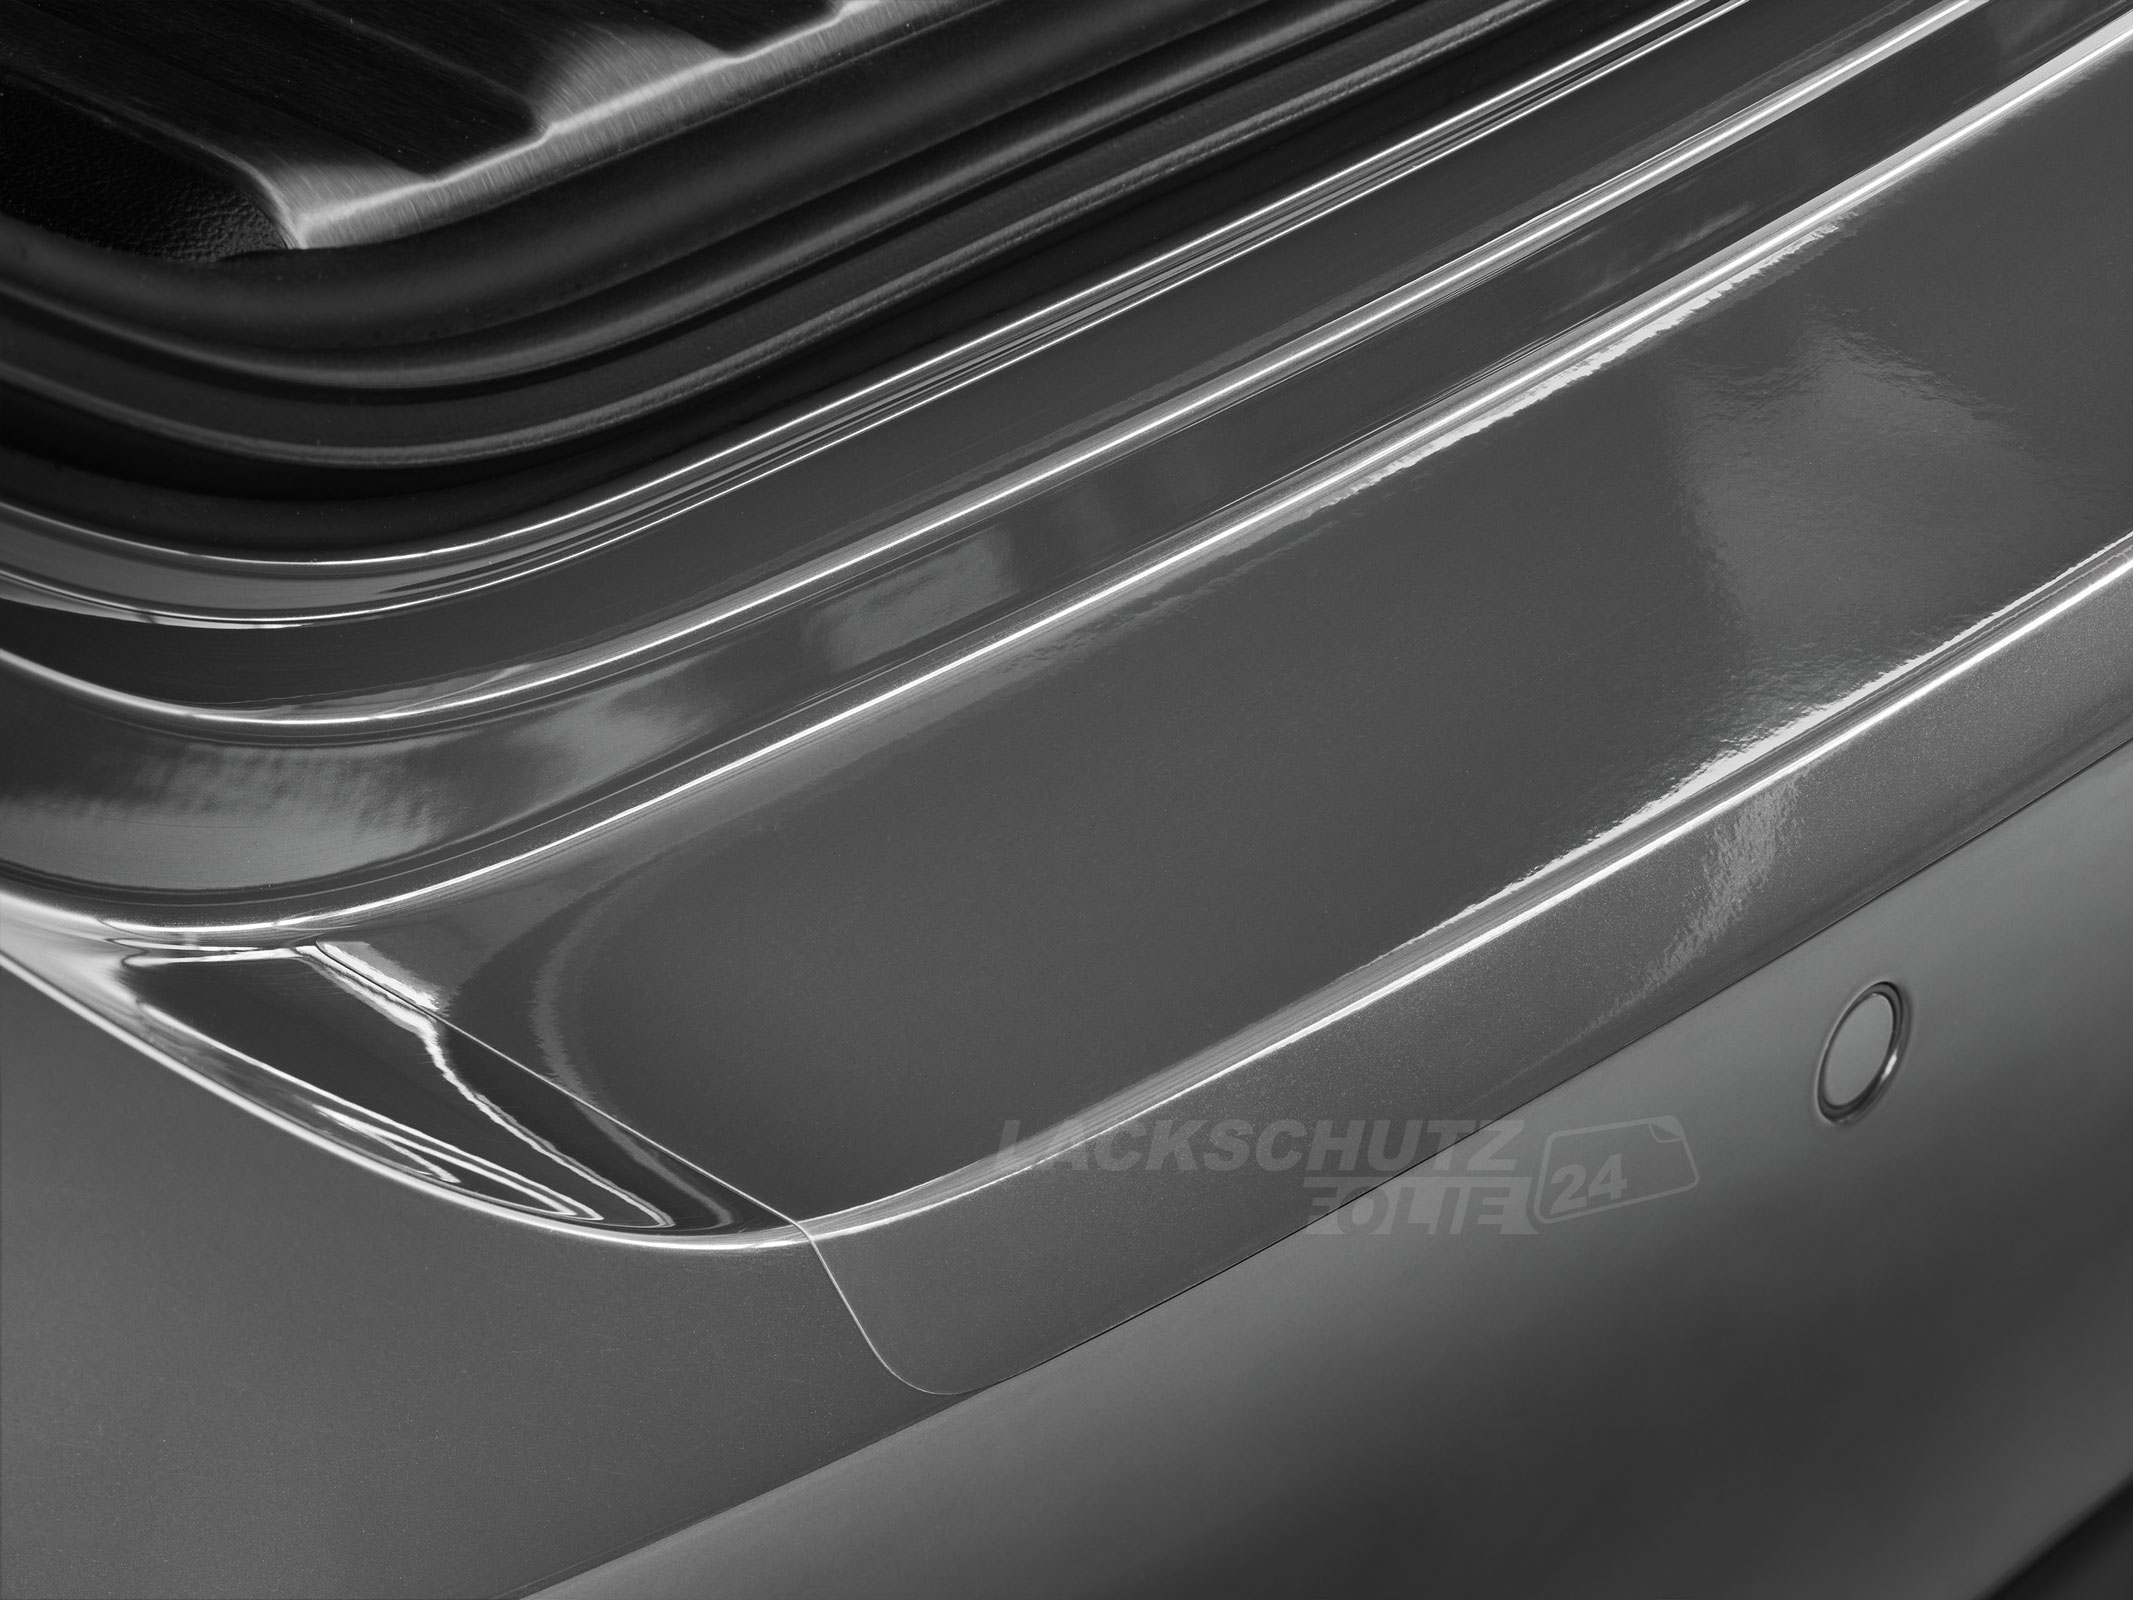 Ladekantenschutzfolie - Transparent Glatt Hochglänzend 240 µm stark für Audi A8 D4, Typ 4H, Facelift, BJ 2013-2017